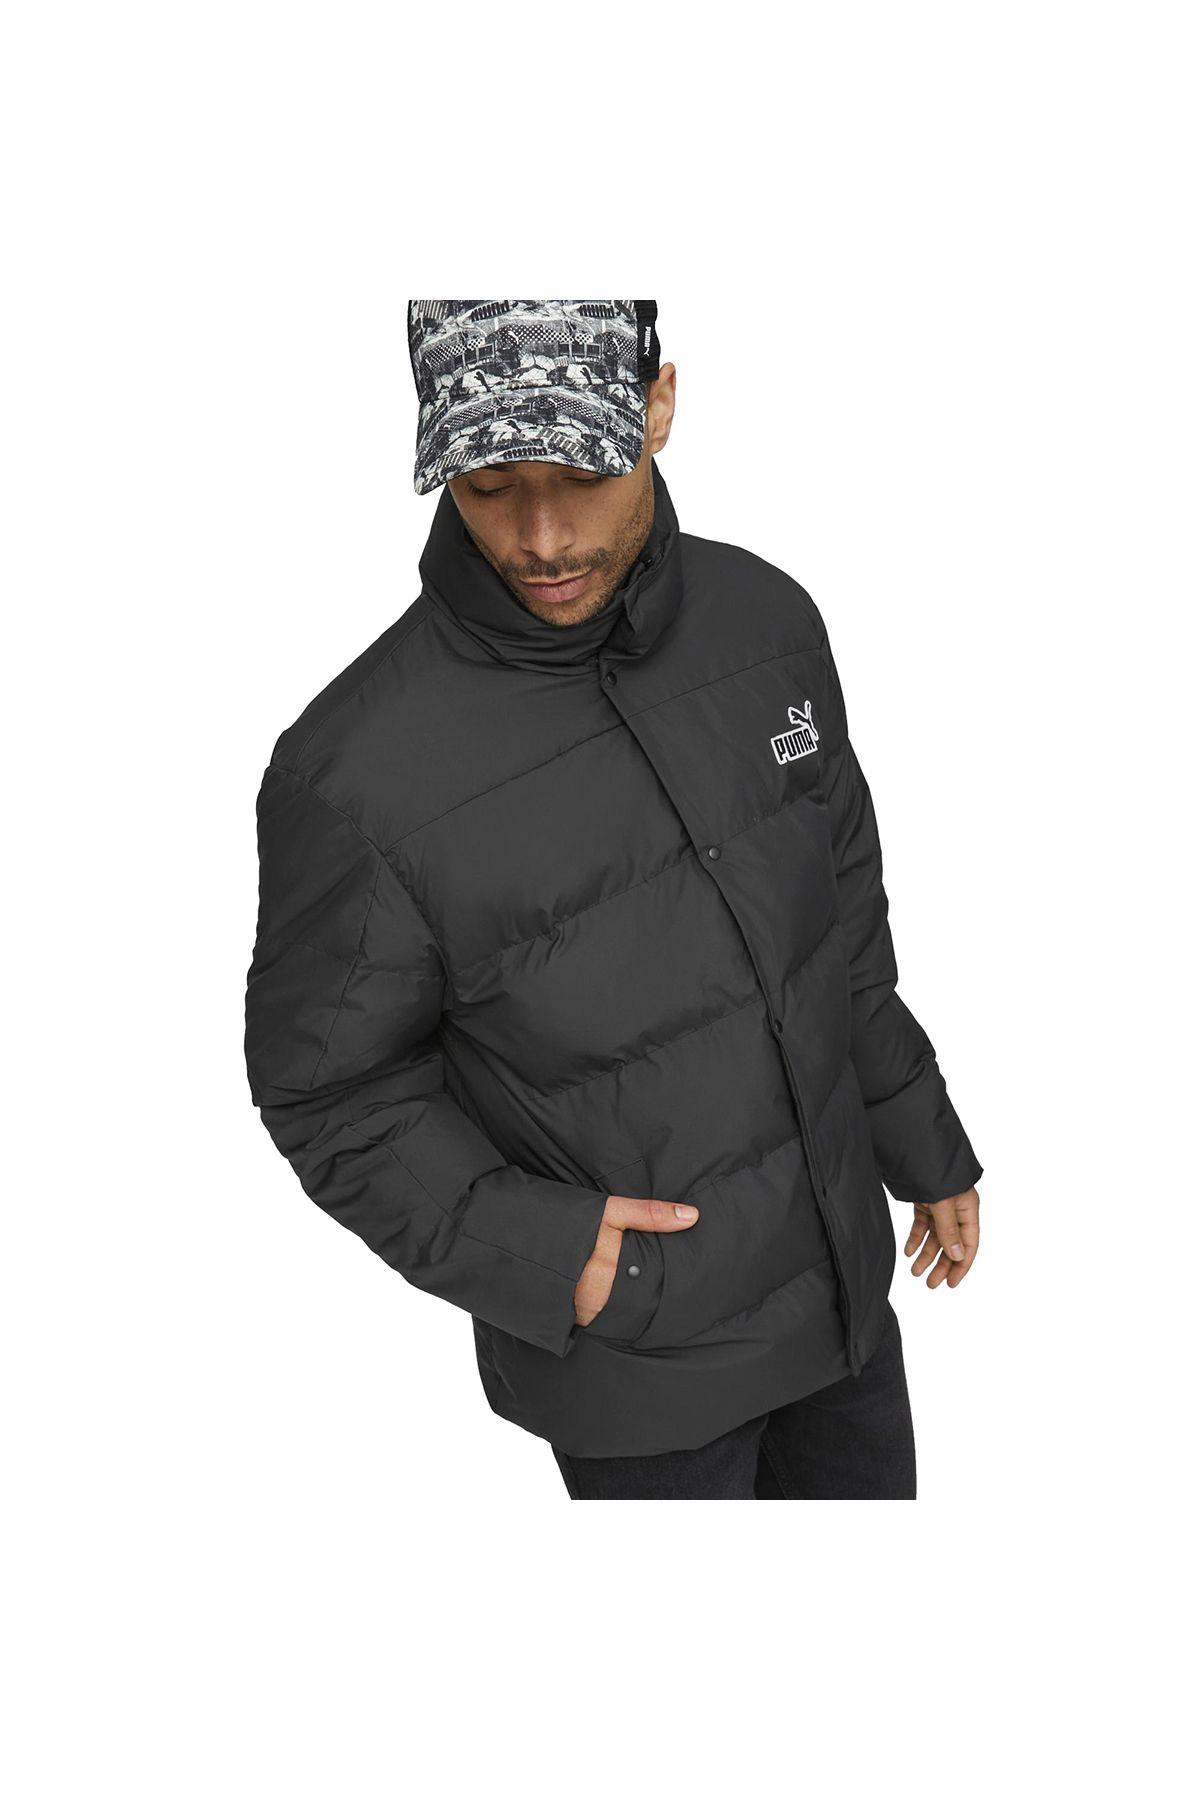 Puma Sports Winterjacket - Black - Regular fit - Trendyol